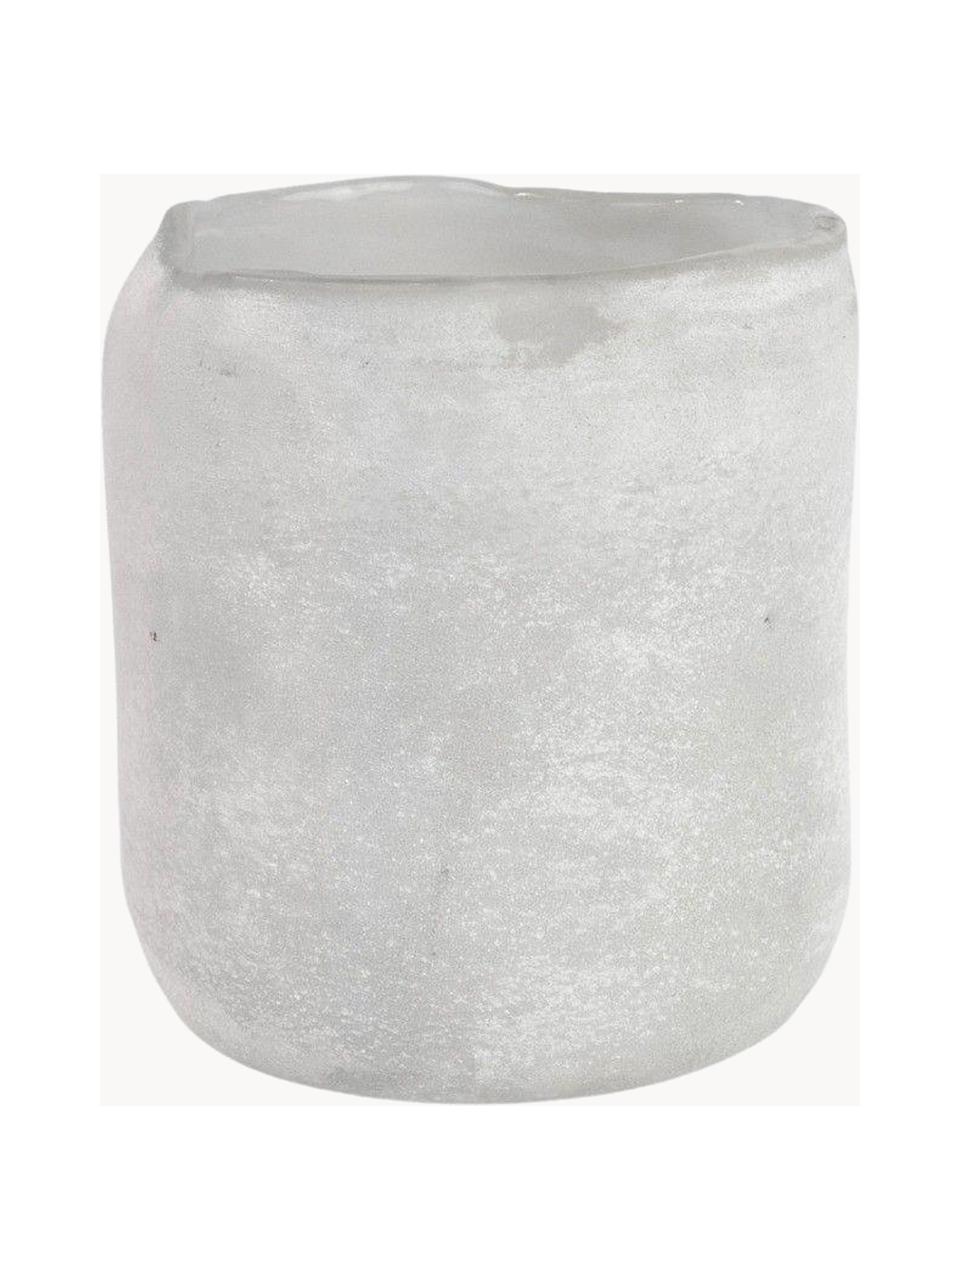 Waxinelichthouder Halde met mat oppervlak, Glas, Lichtgrijs, wit, Ø 11 x H 12 cm